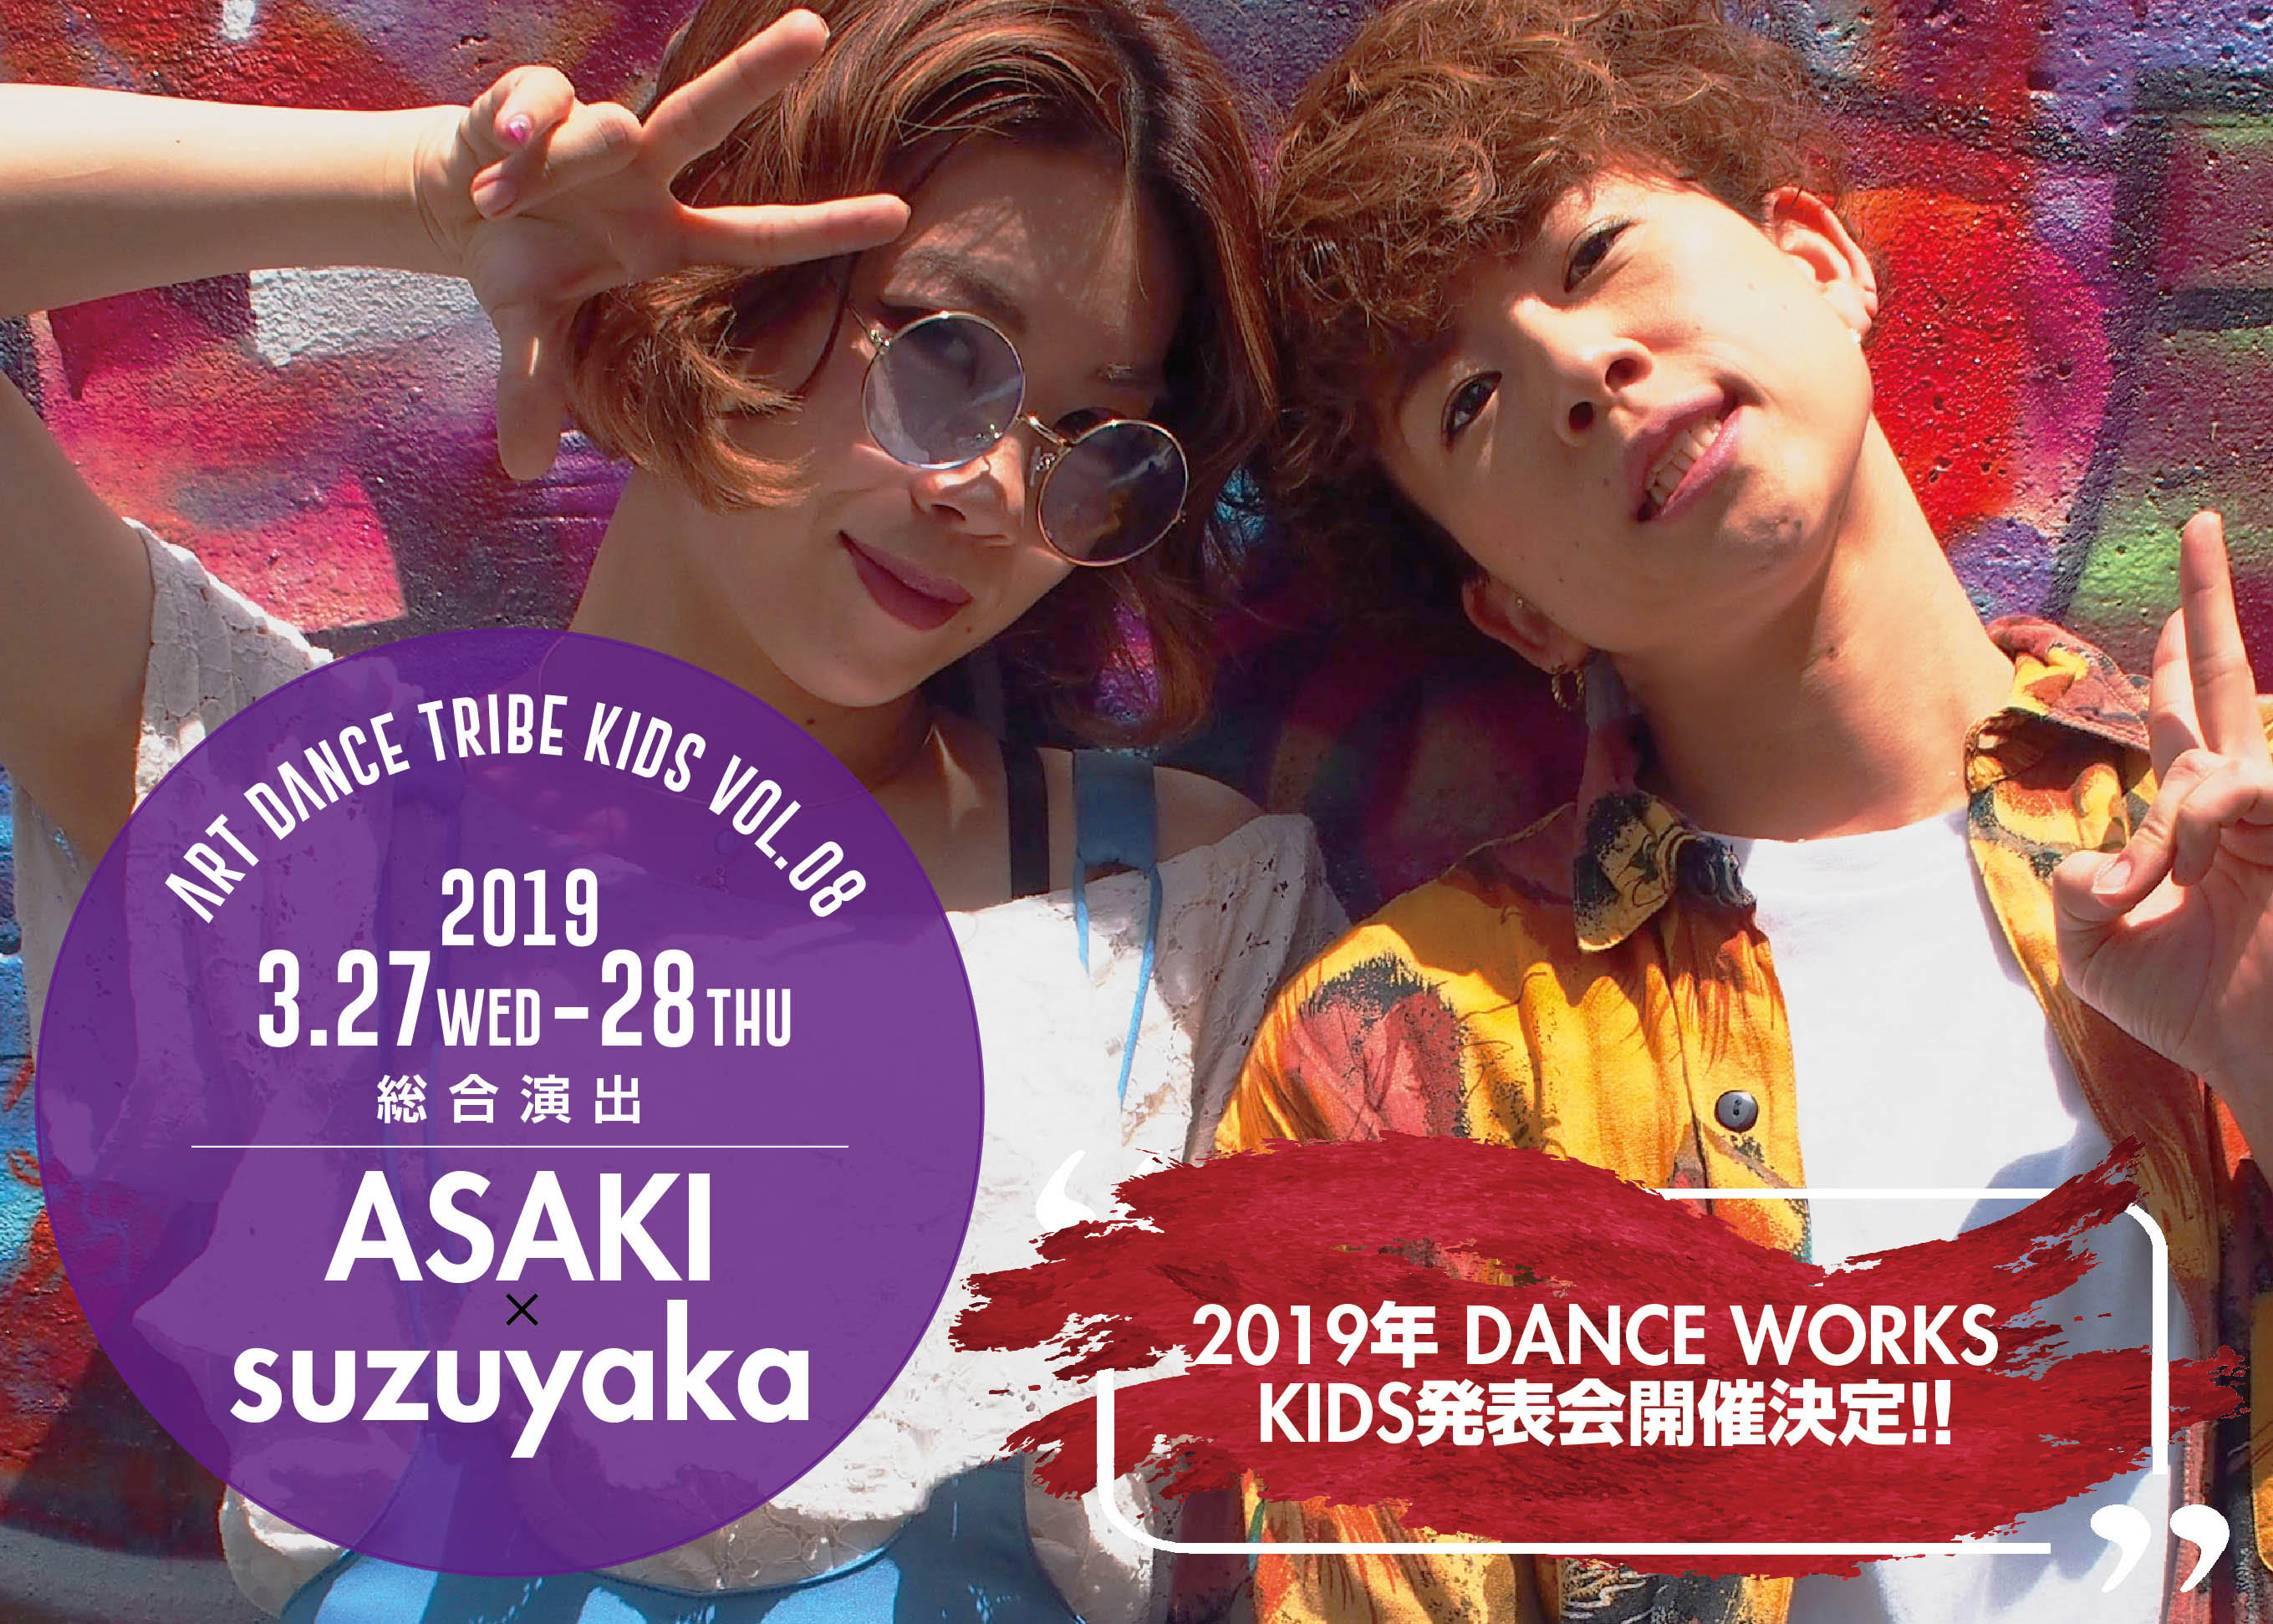 DANCEWORKS KIDS発表会[ART DANCE TRIBE KIDS VOL.8]総合演出